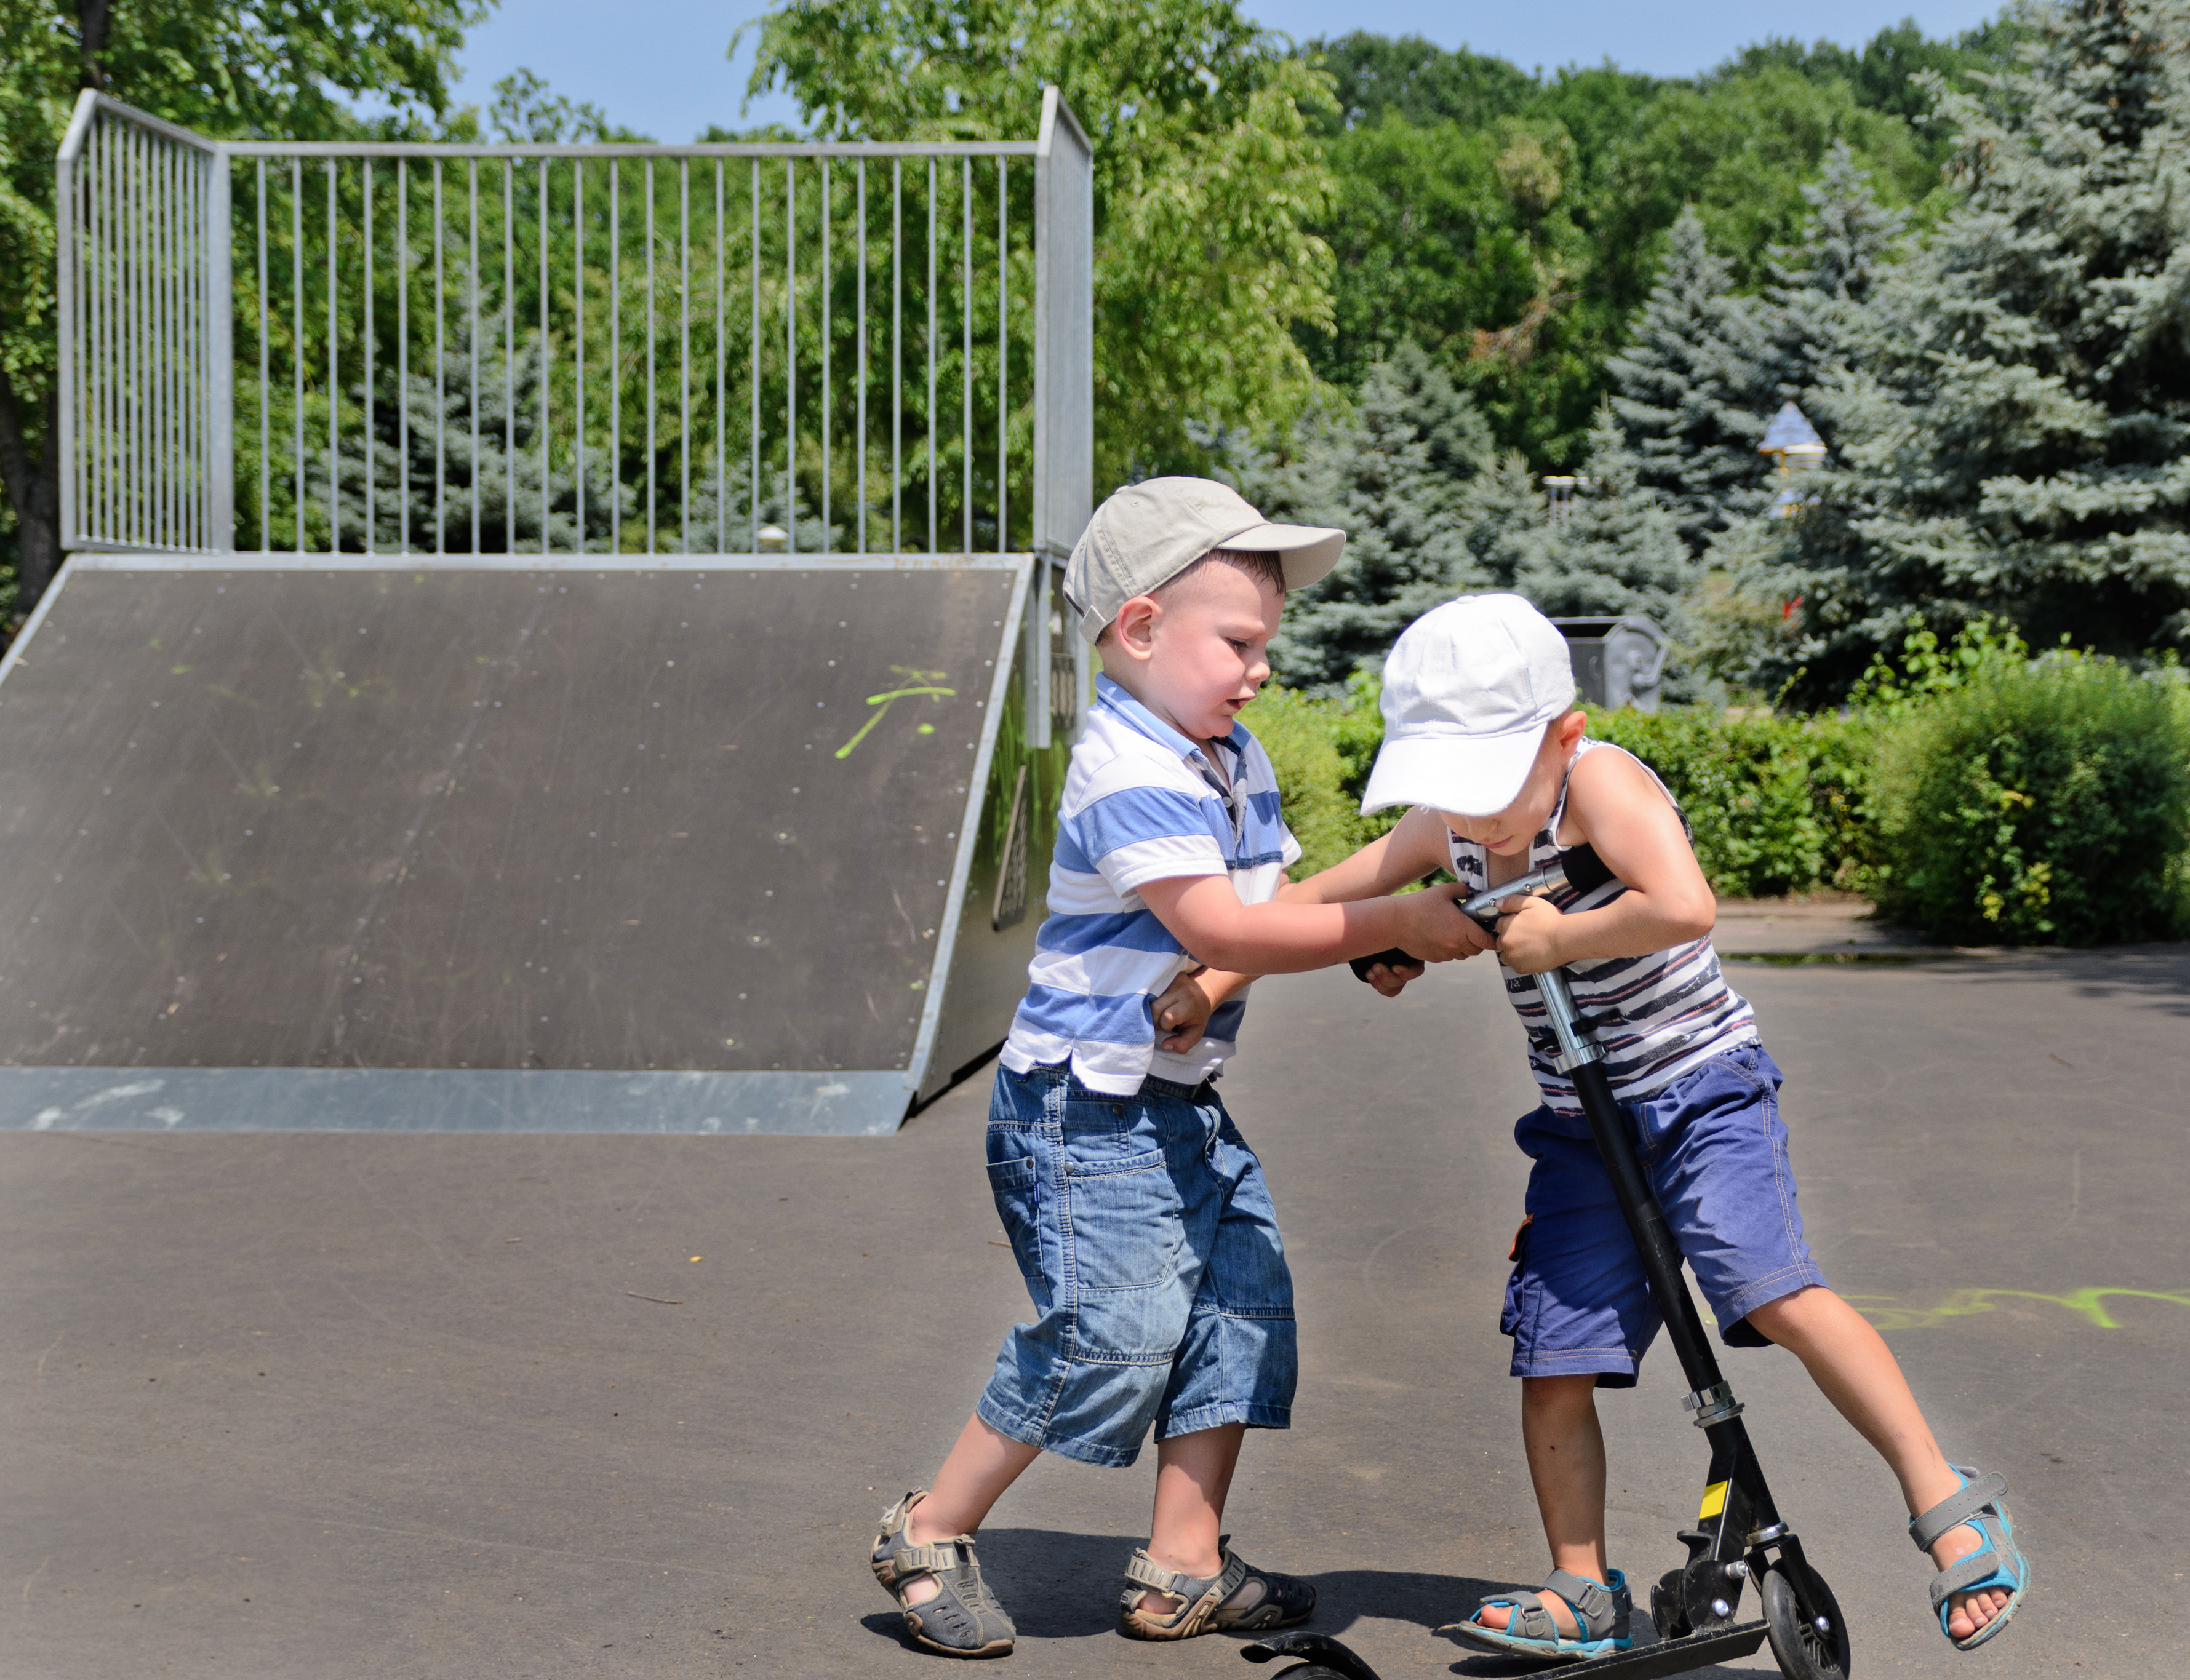 Dos chicos peleándose por un patinete. | Foto: Shutterstock